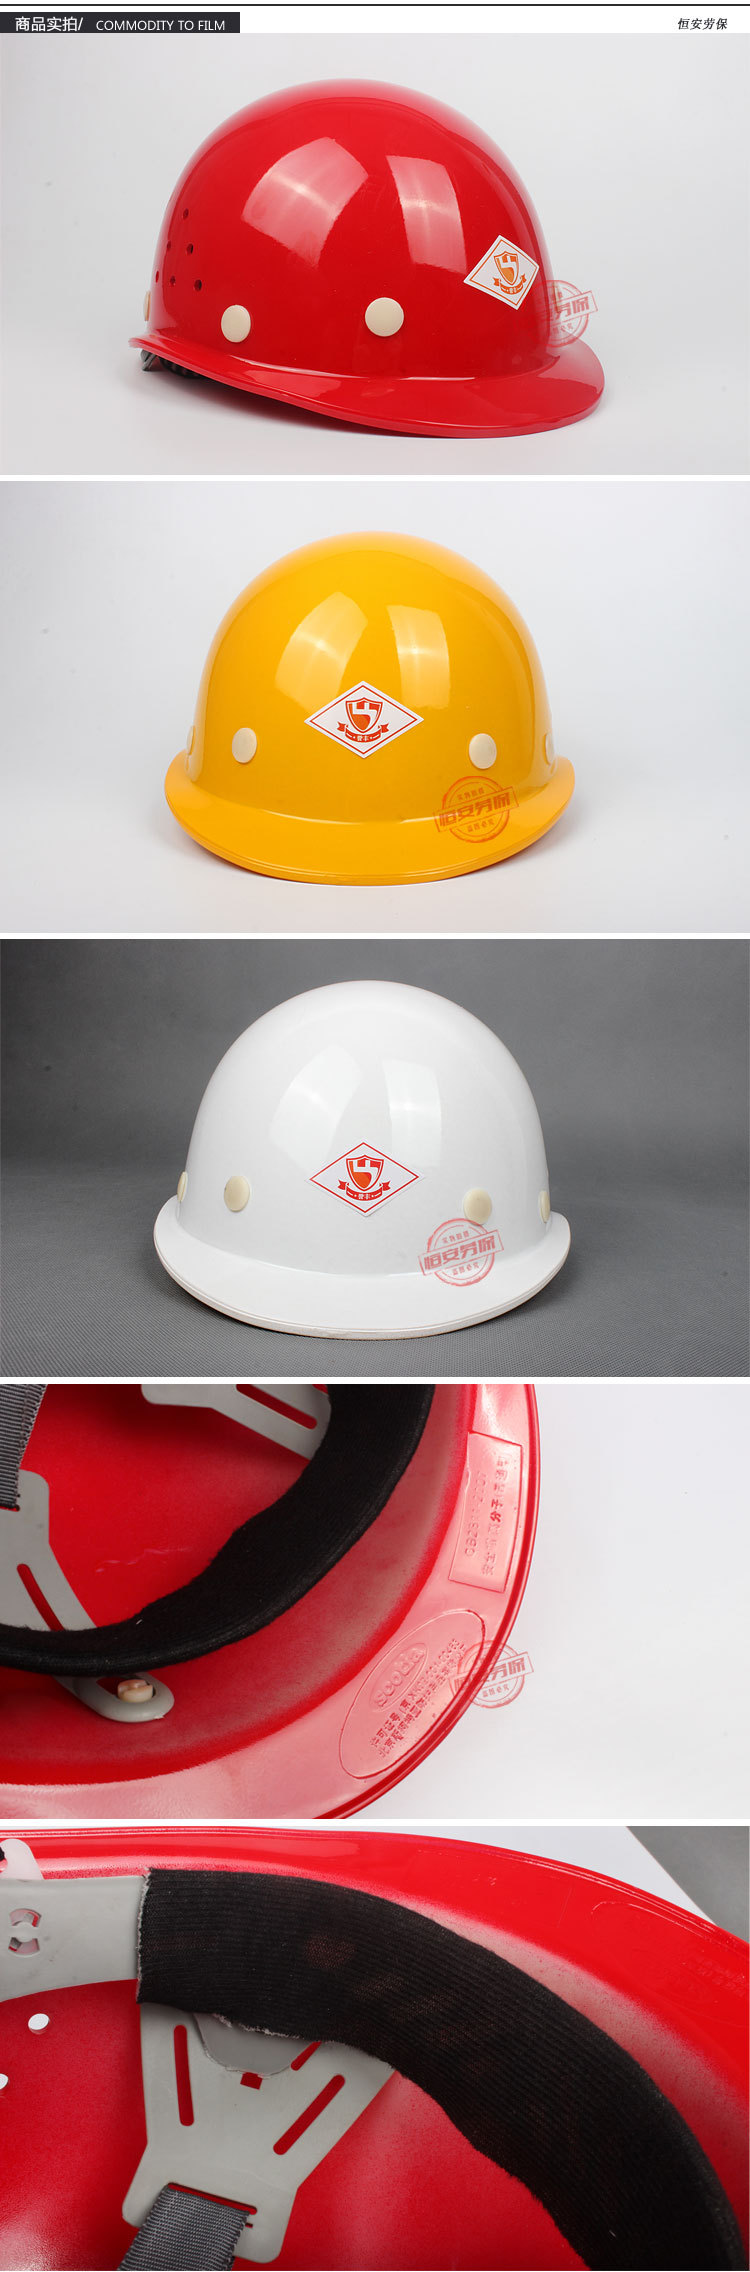 小沿玻璃钢安全帽供应商 安全帽品牌厂家直销 安全帽批发价格哪家好 小沿玻璃钢安全帽图片